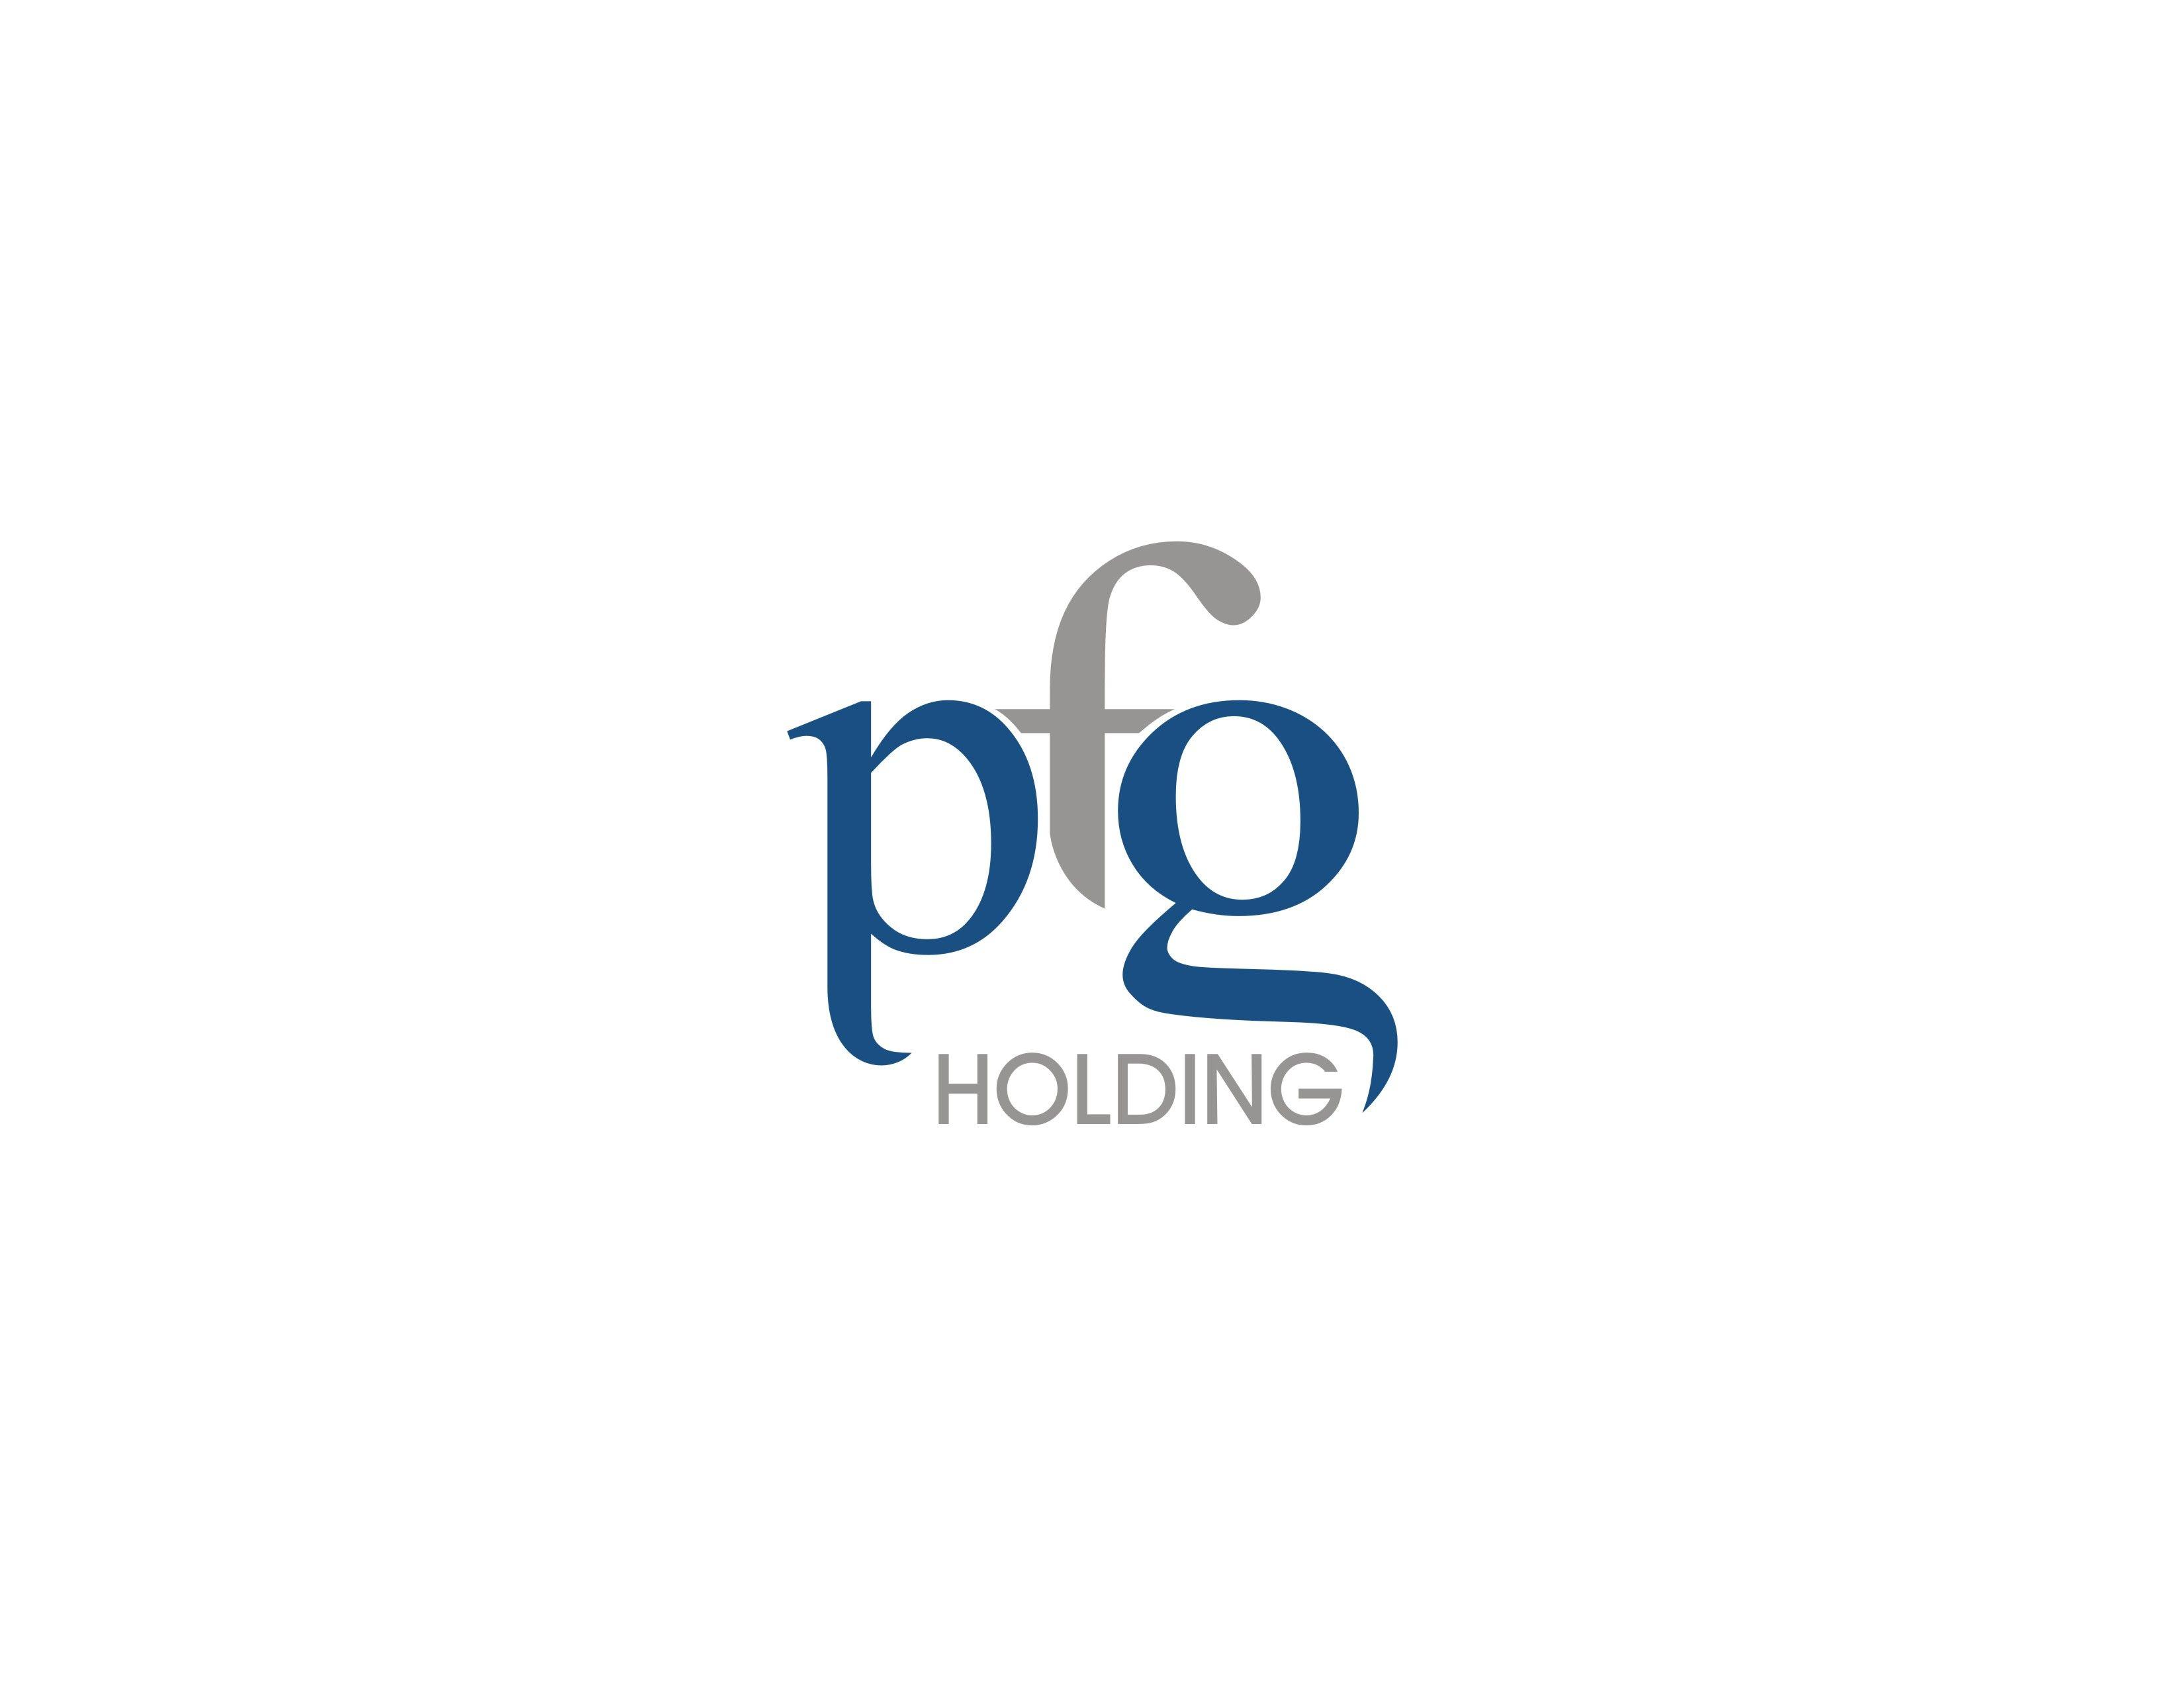 PFG Logo - DesignContest - PFG Holding pfg-holding